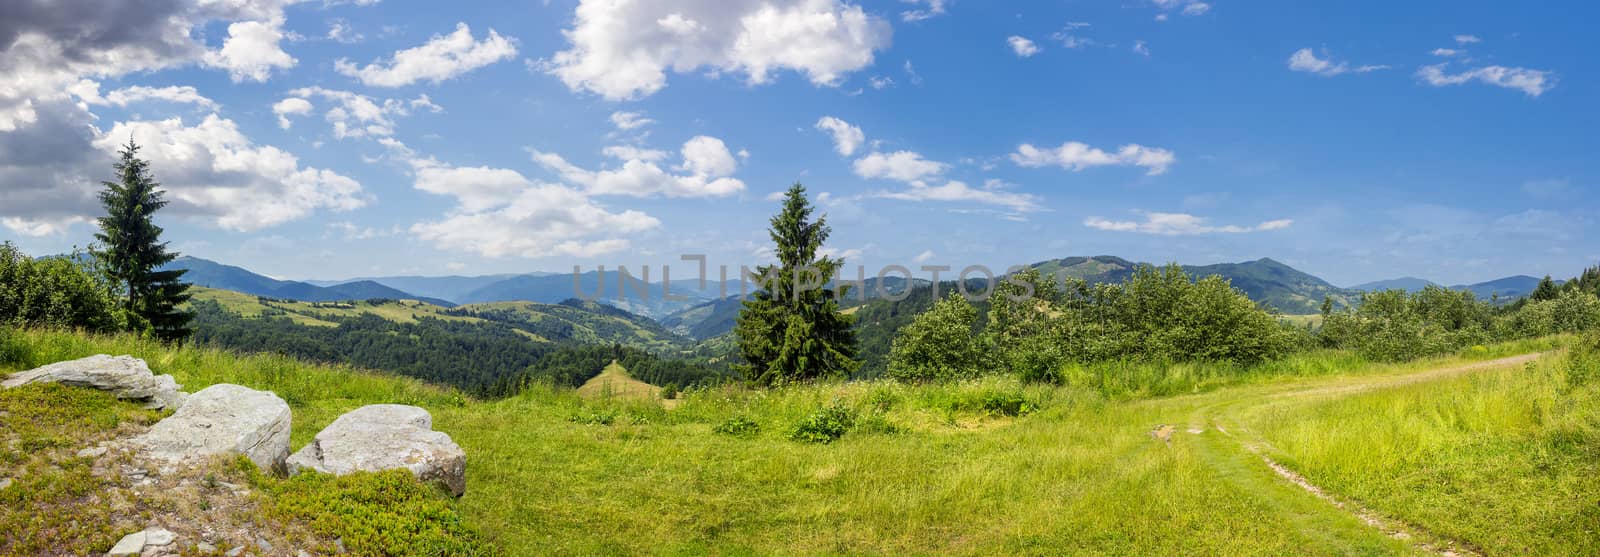 boulders on hillside meadow in mountain by Pellinni